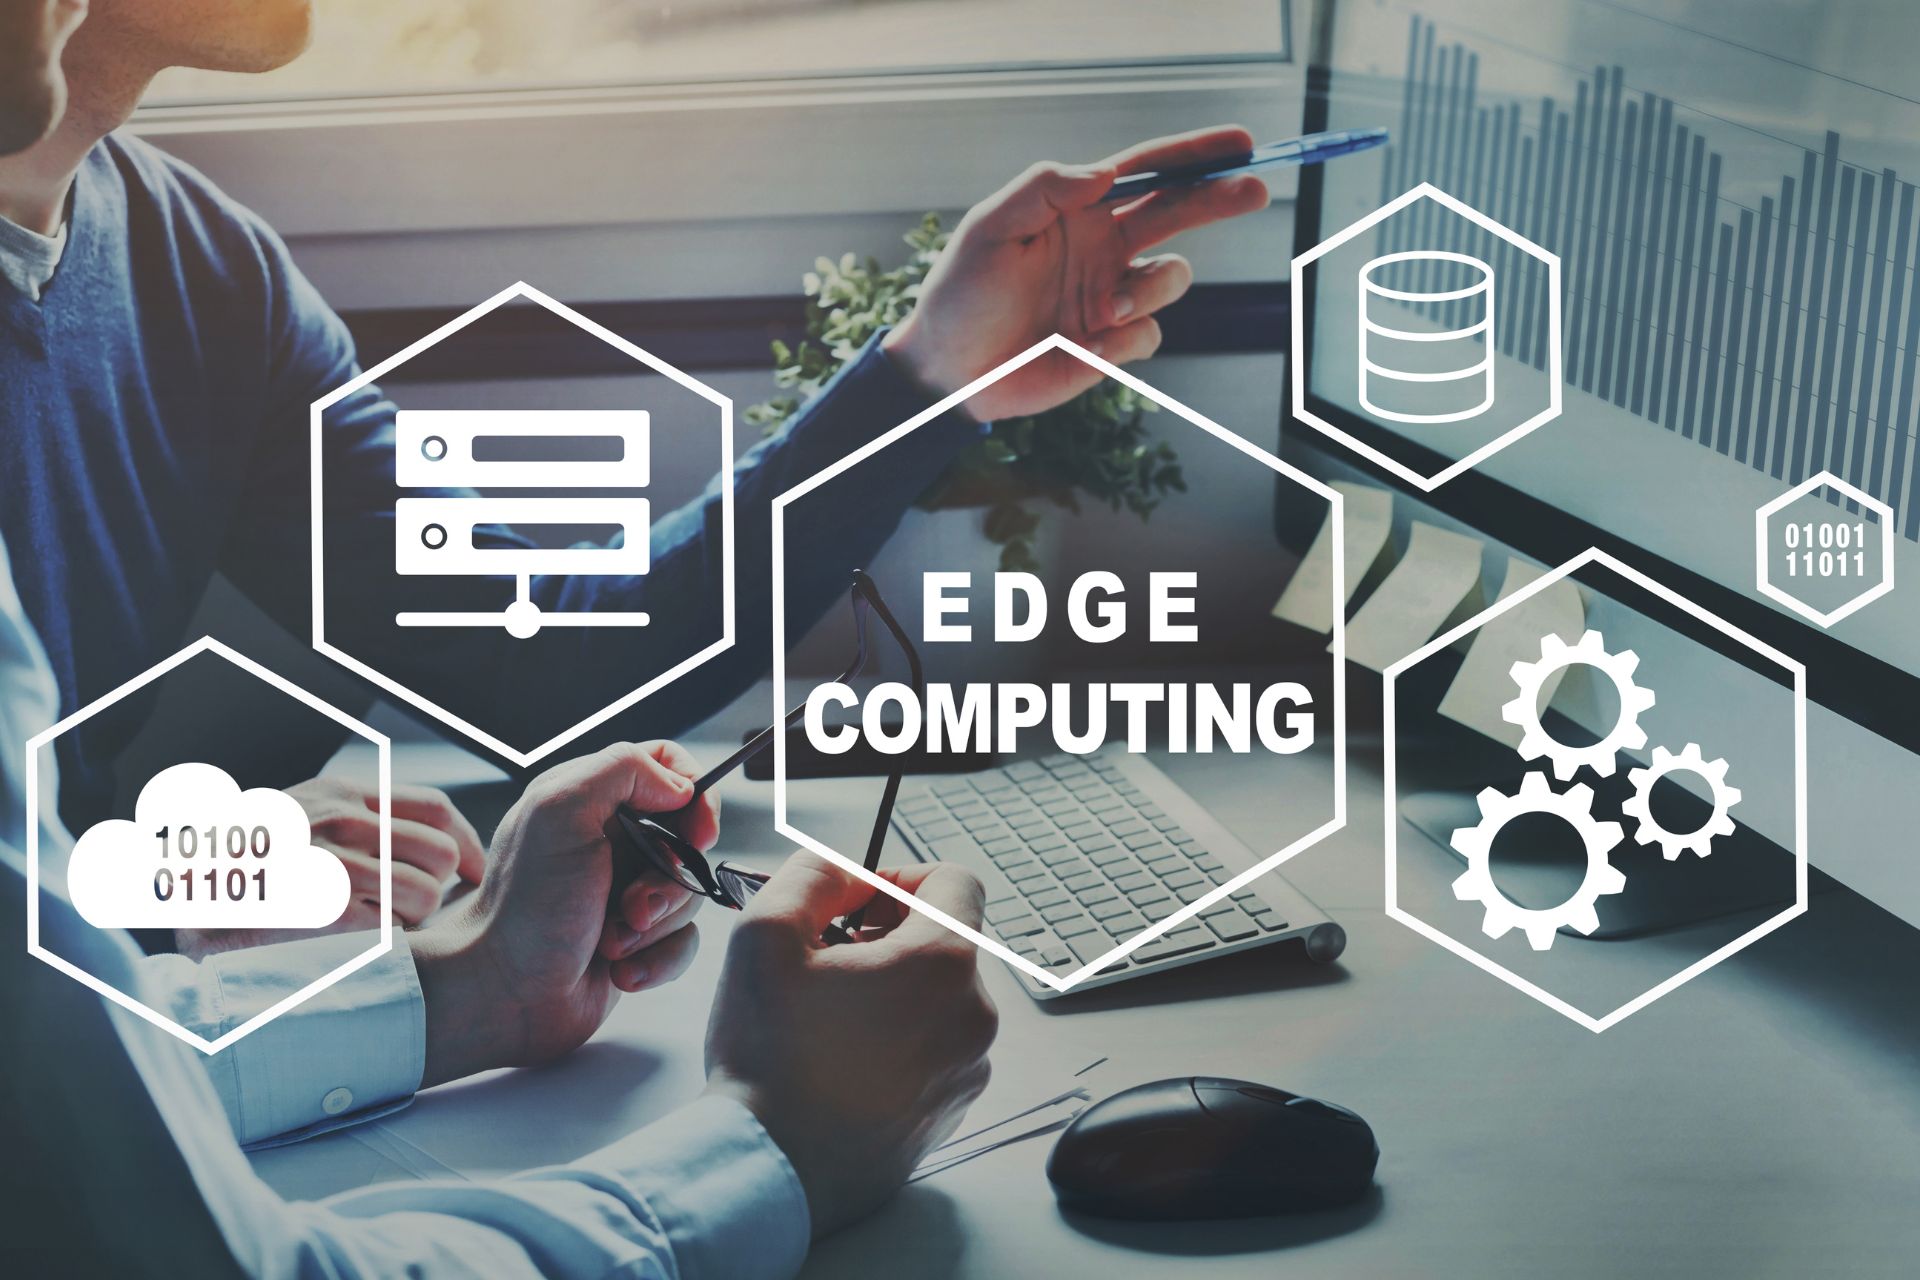 Edge Computing rappresenta una delle soluzioni innovative per rimanere competitive e migliorare le operazioni